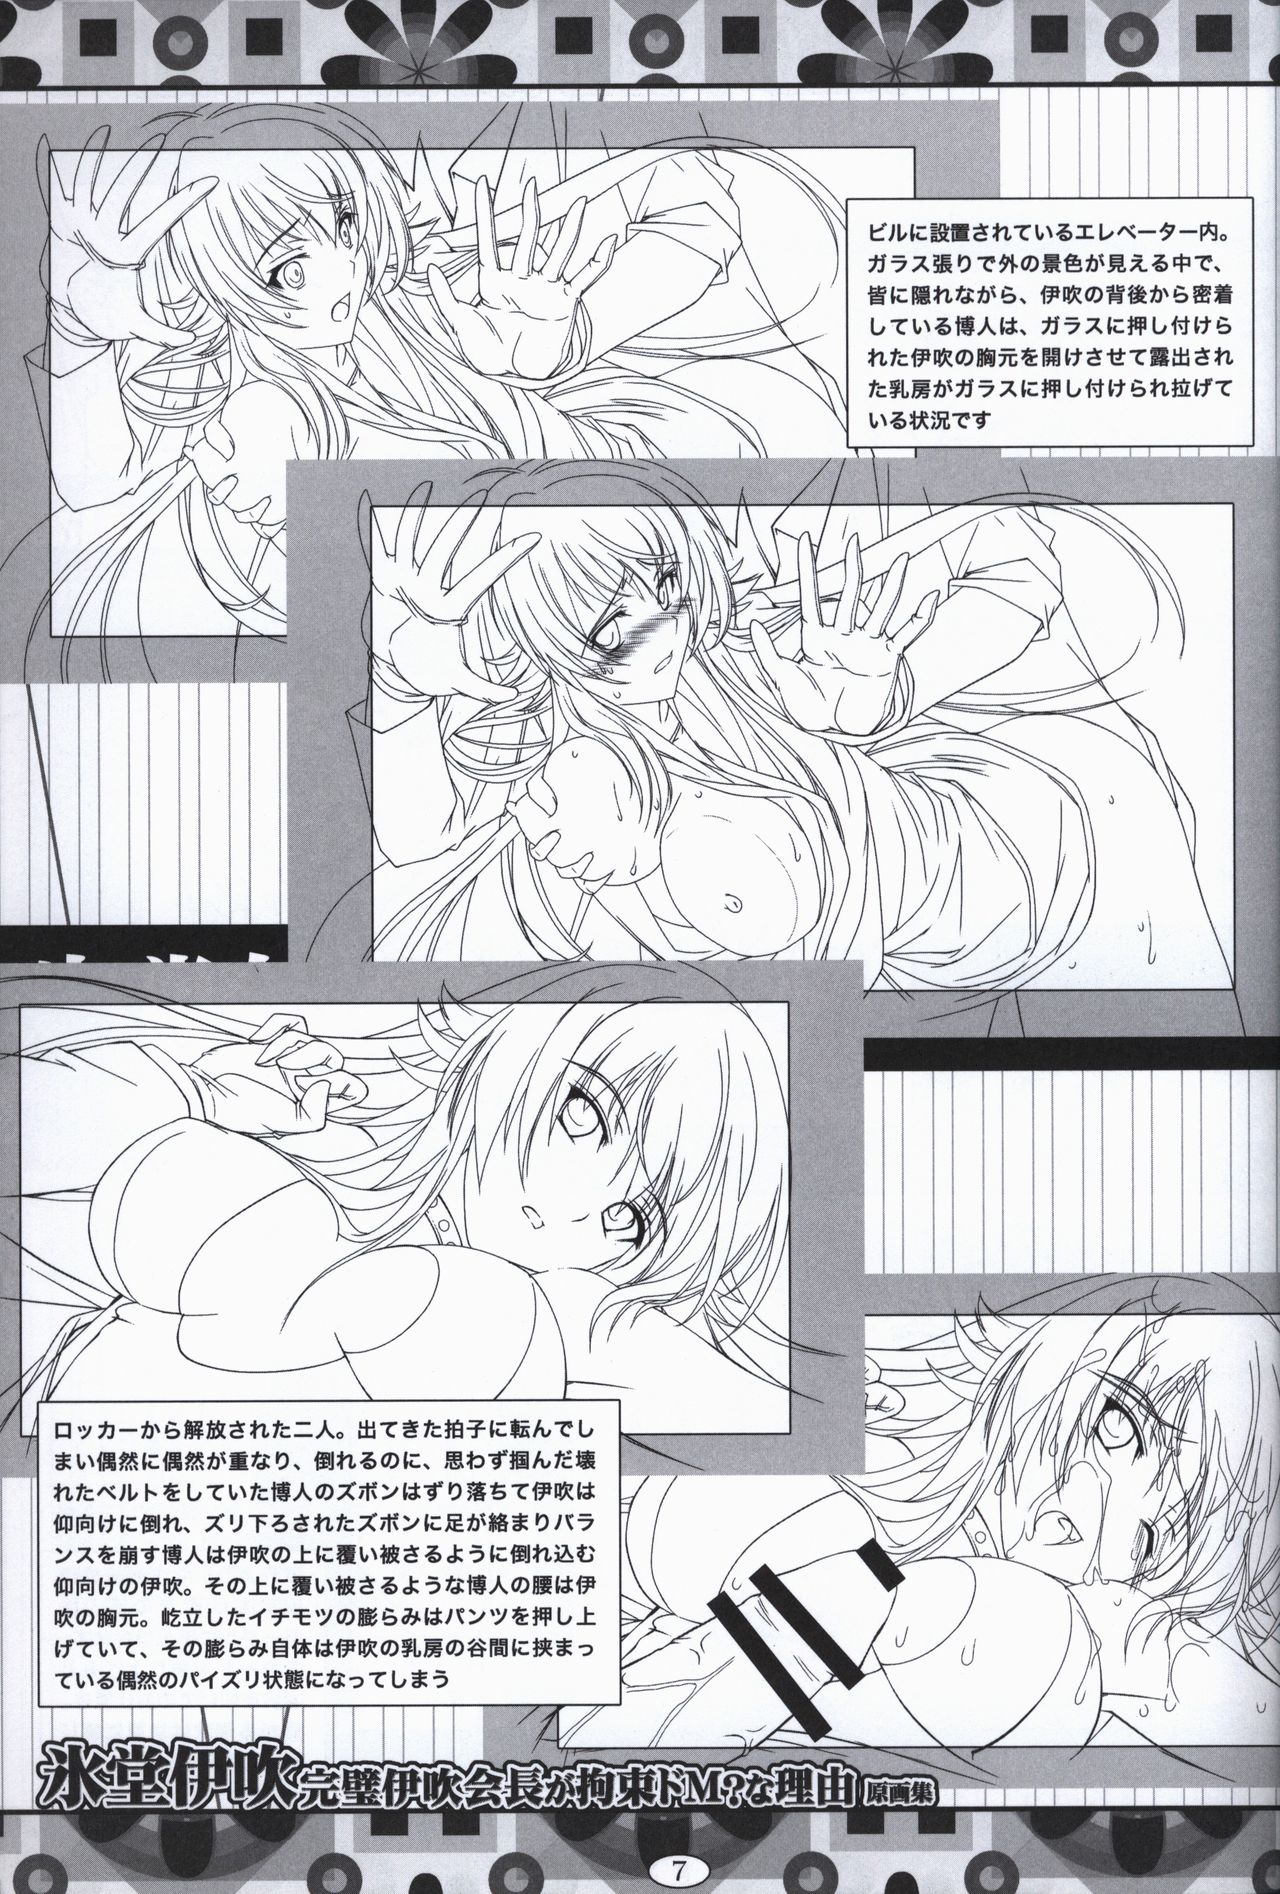 Hyoudou Ibuki ~Kanpeki Ibuki Kaichou ga Kousoku Do M!? na Wake~ illustration art book page 6 full